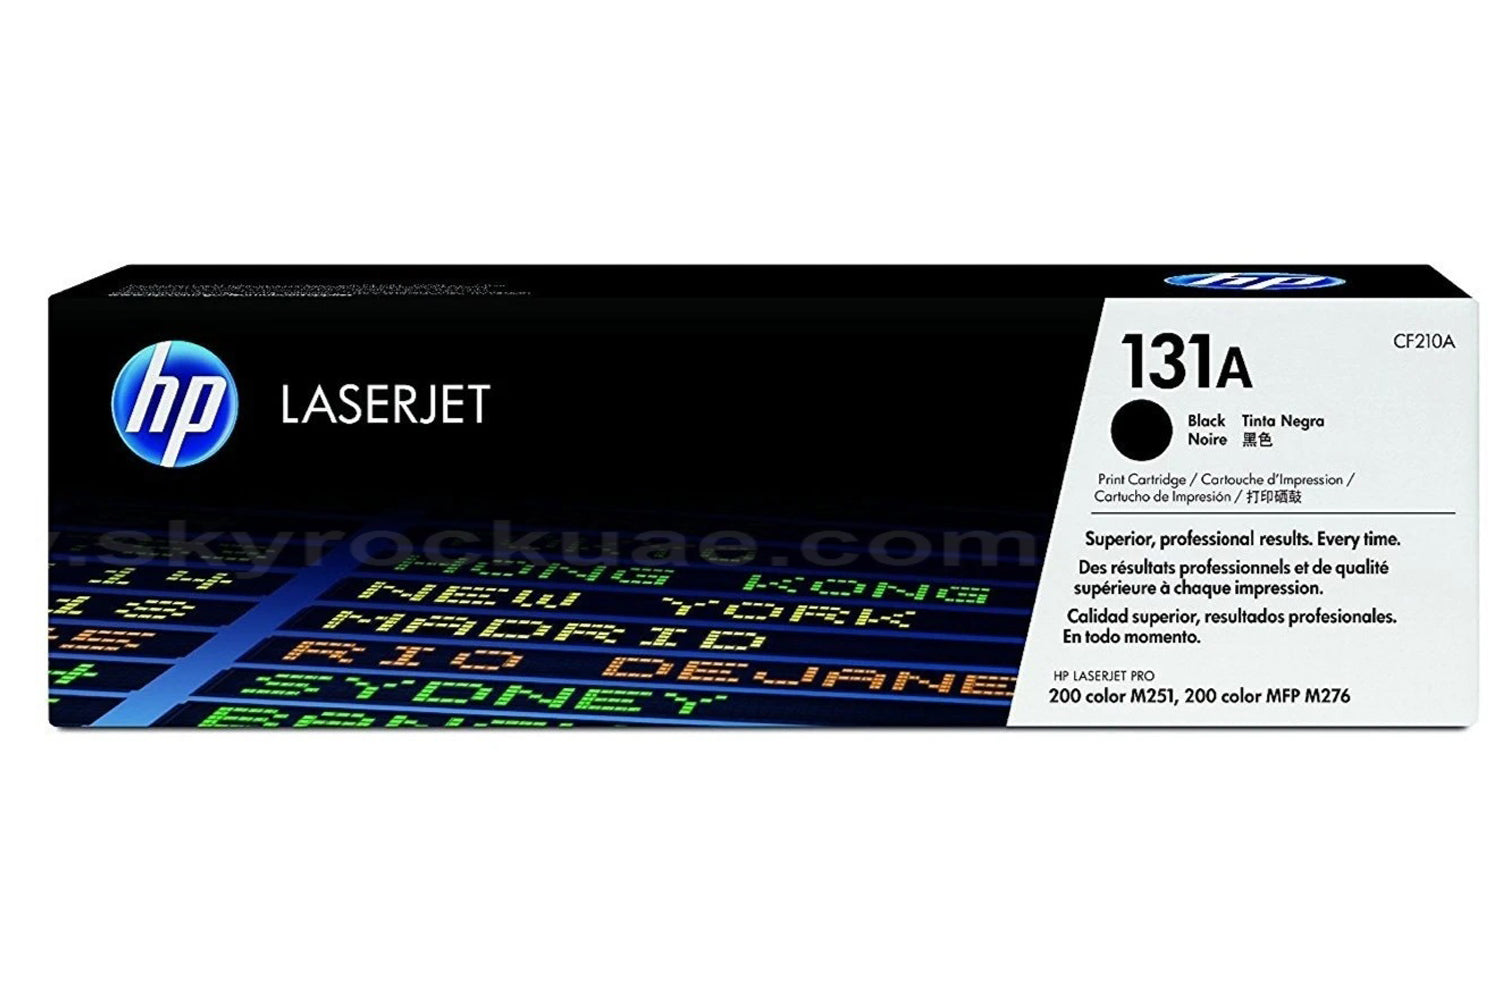 HP 131A Toner Cartridges for HP Colour LaserJet Pro 200 Color  M251 , M276 Series